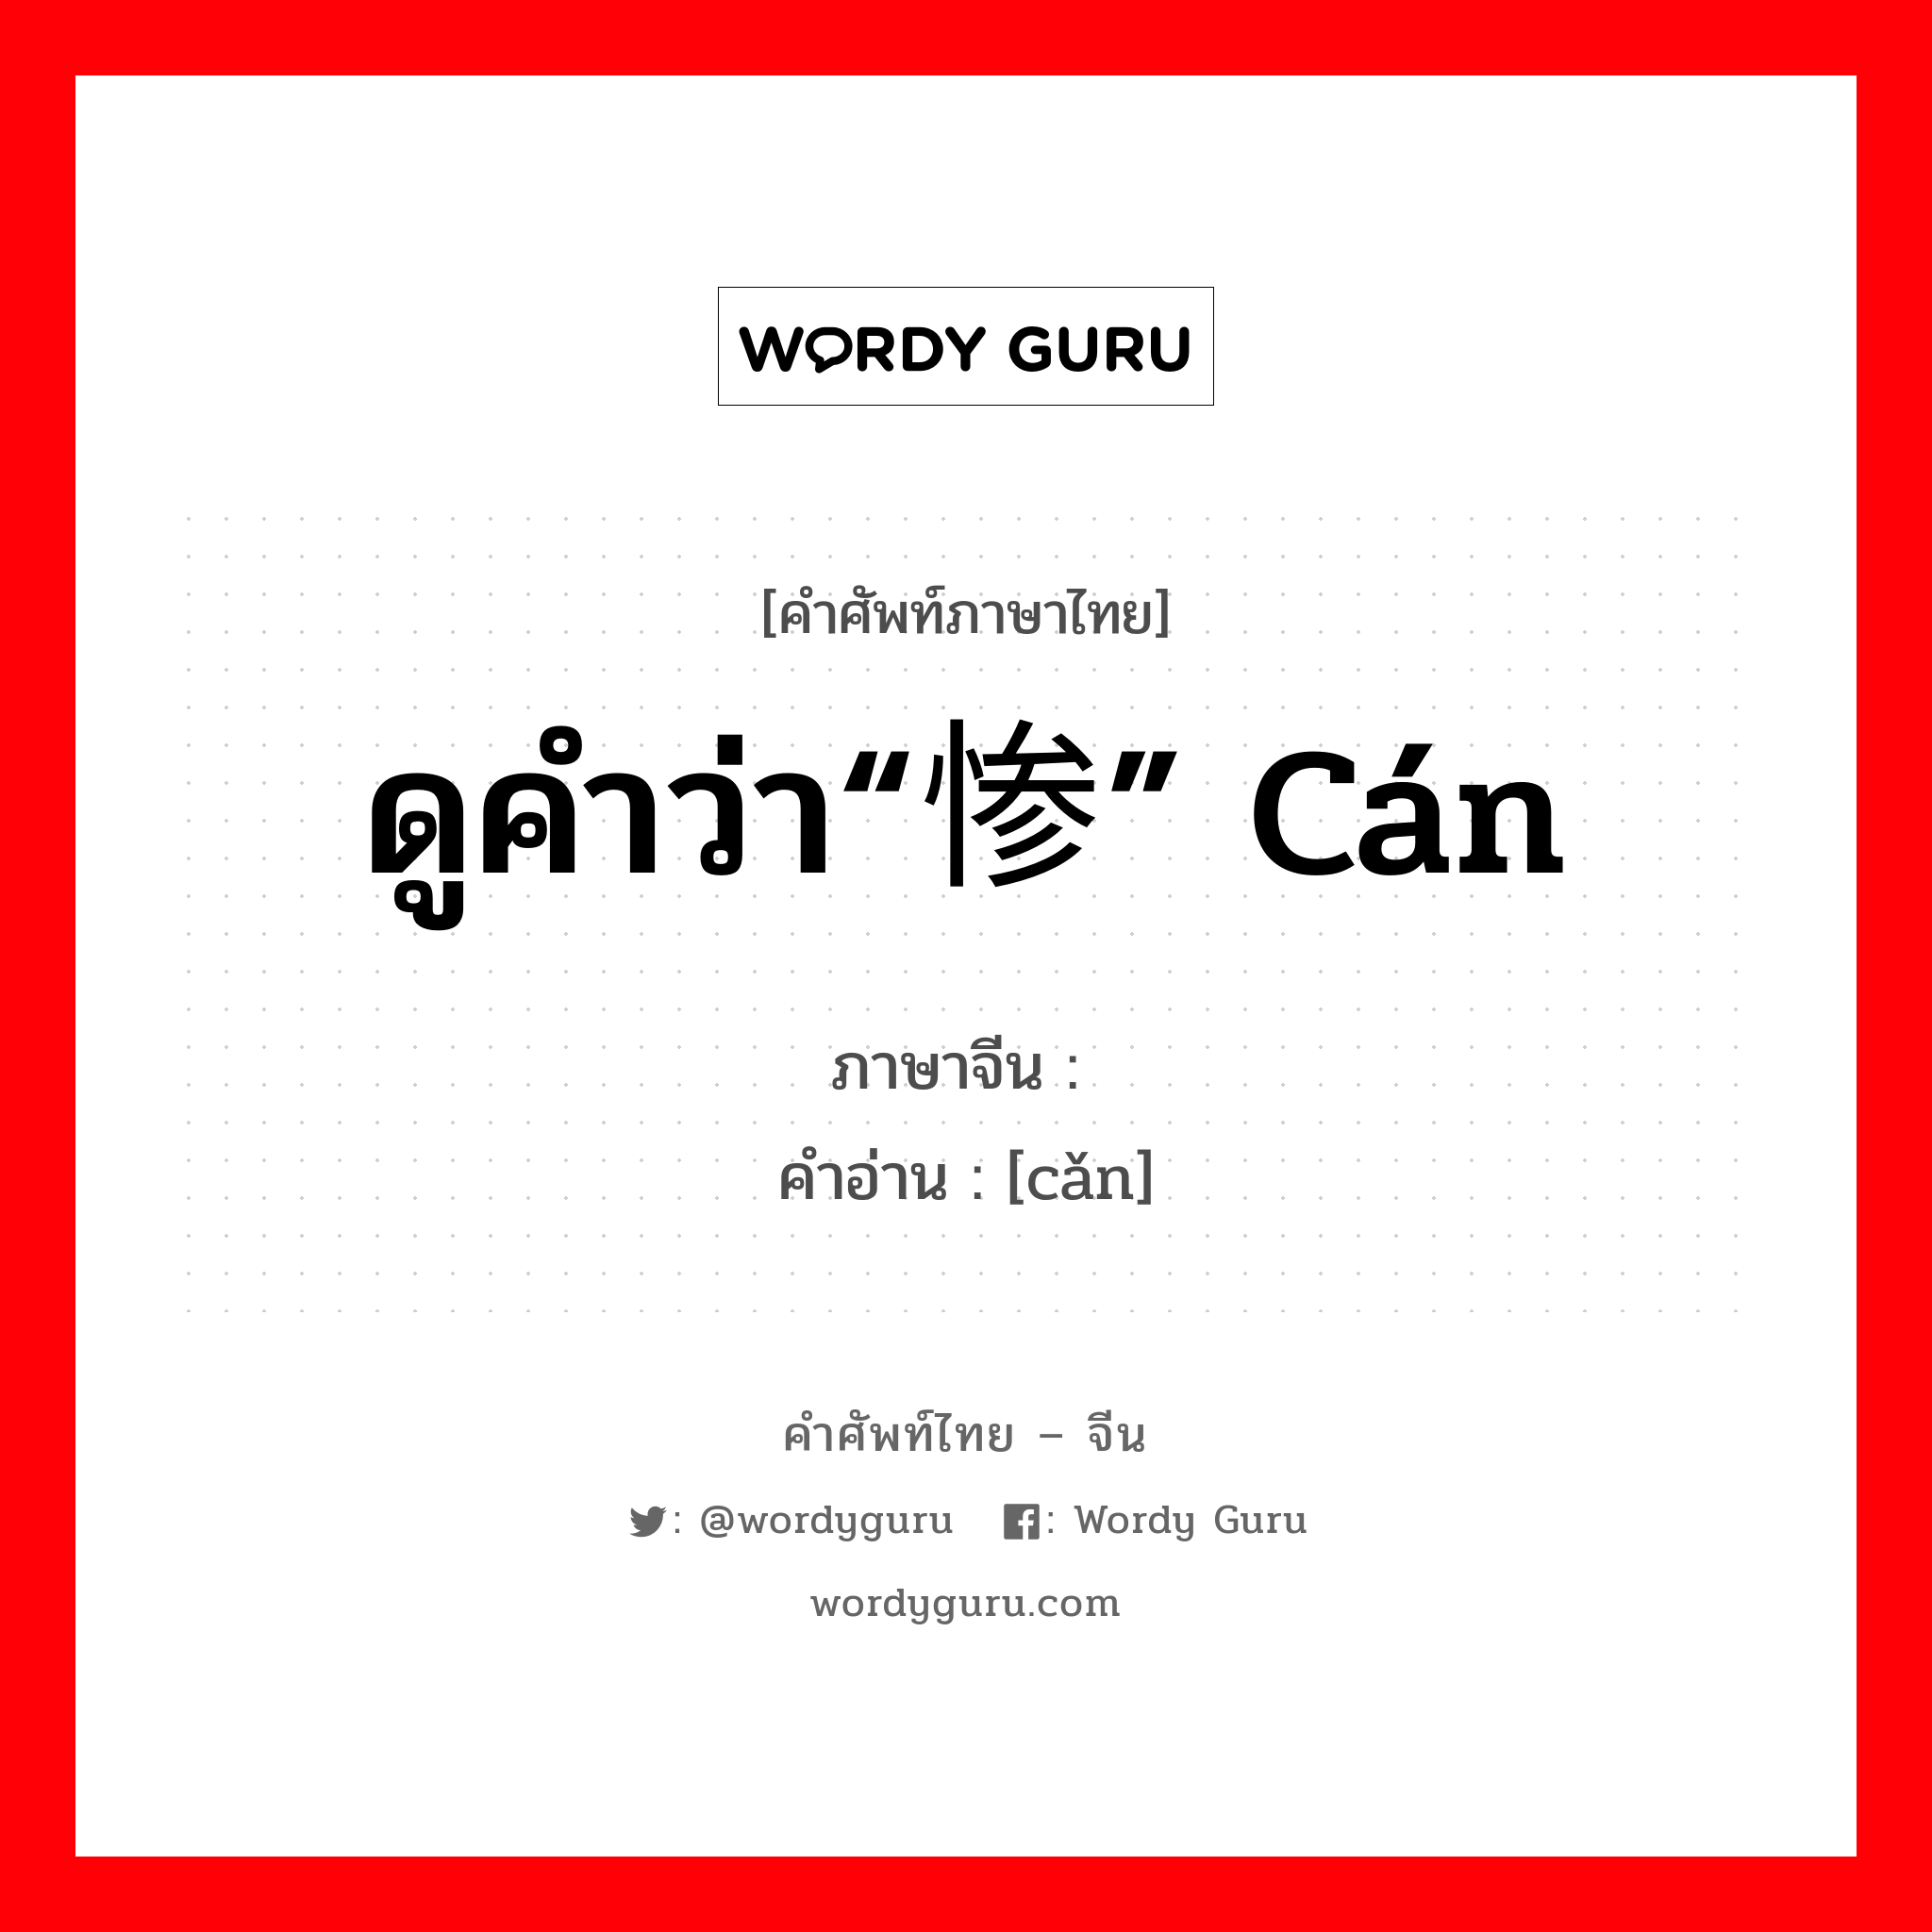 ดูคำว่า“惨” cán ภาษาจีนคืออะไร, คำศัพท์ภาษาไทย - จีน ดูคำว่า“惨” cán ภาษาจีน 憯 คำอ่าน [cǎn]